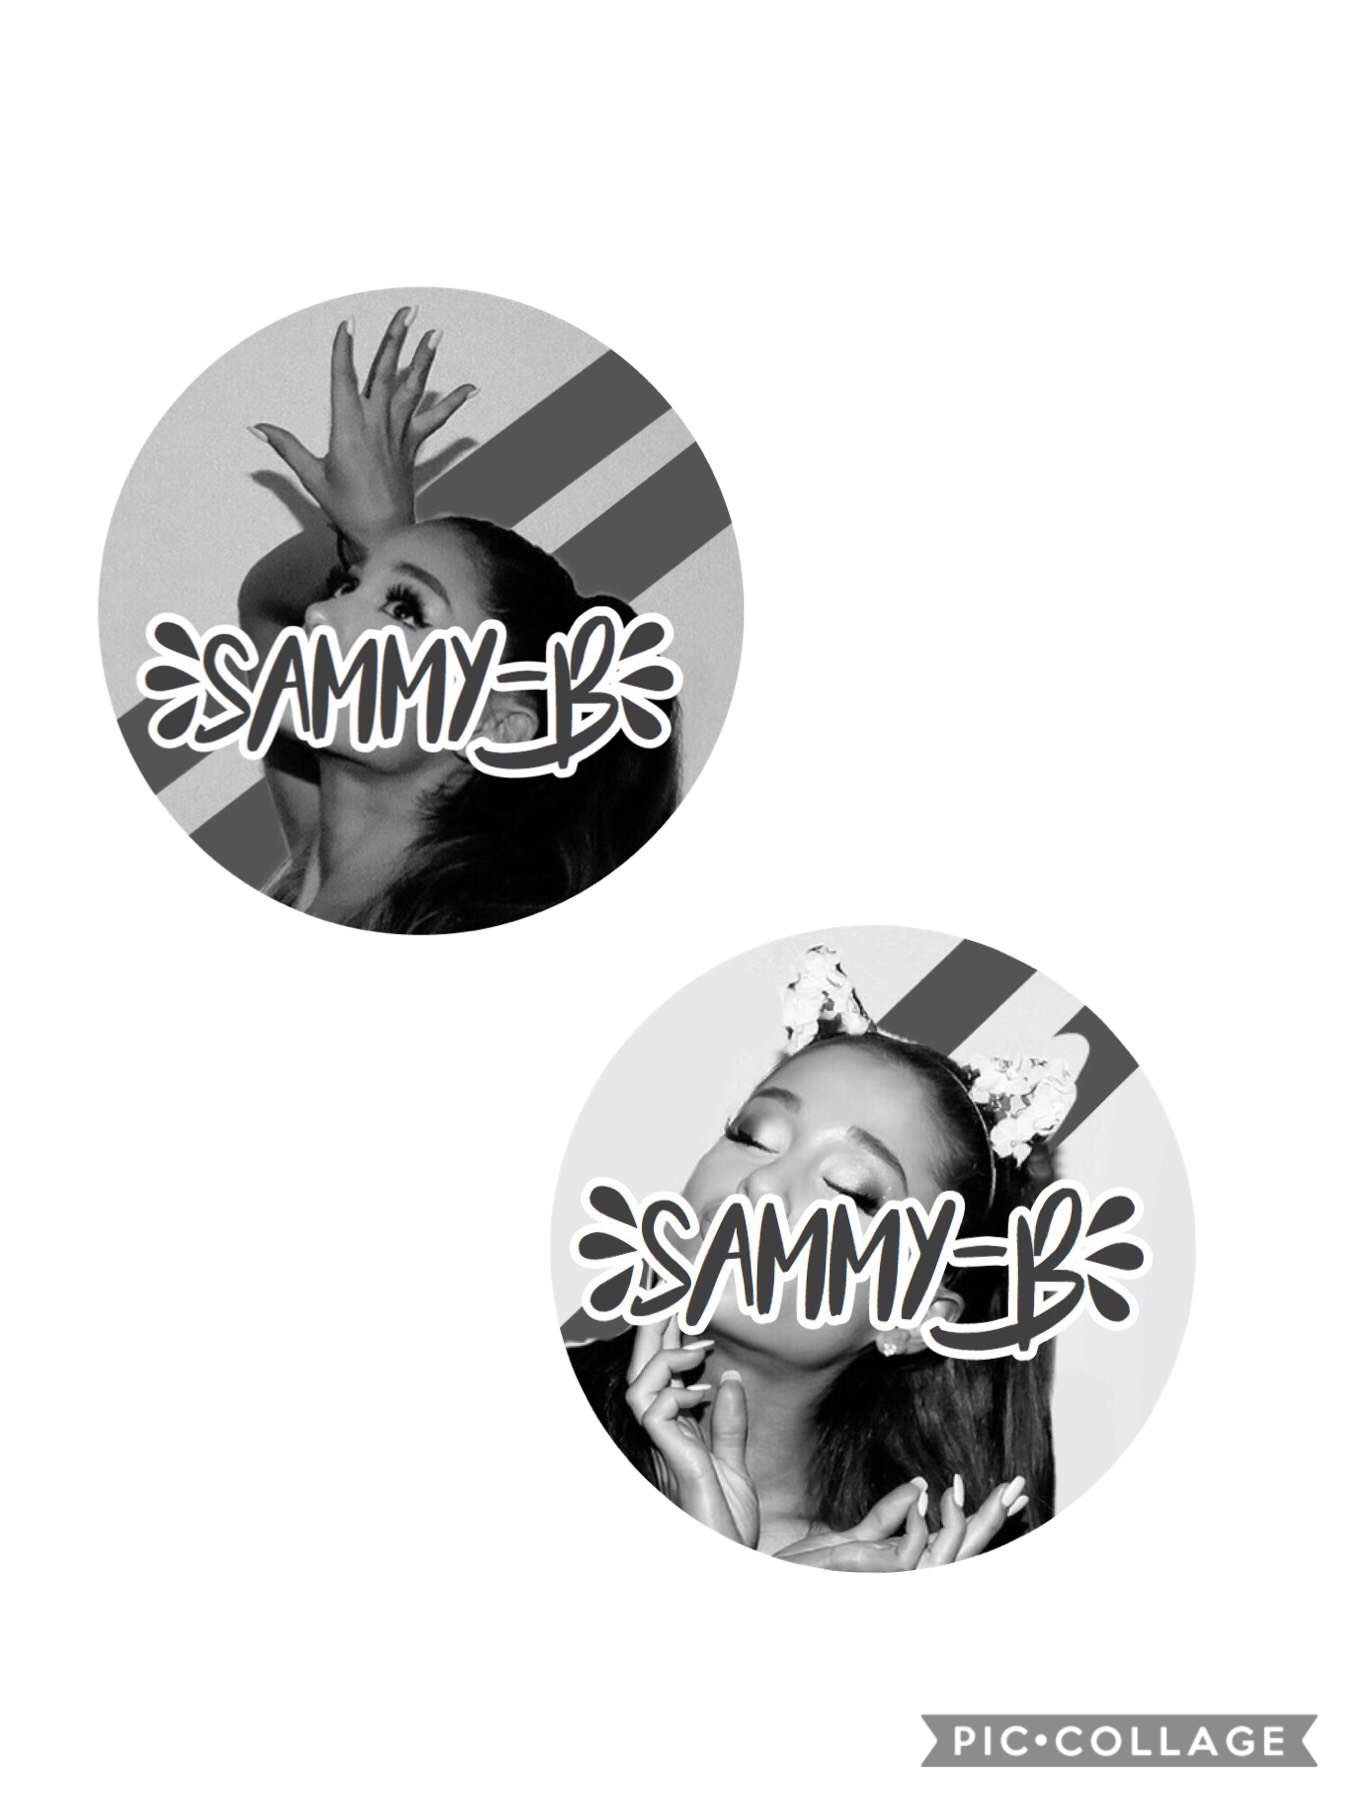 Icons for @sammy-b